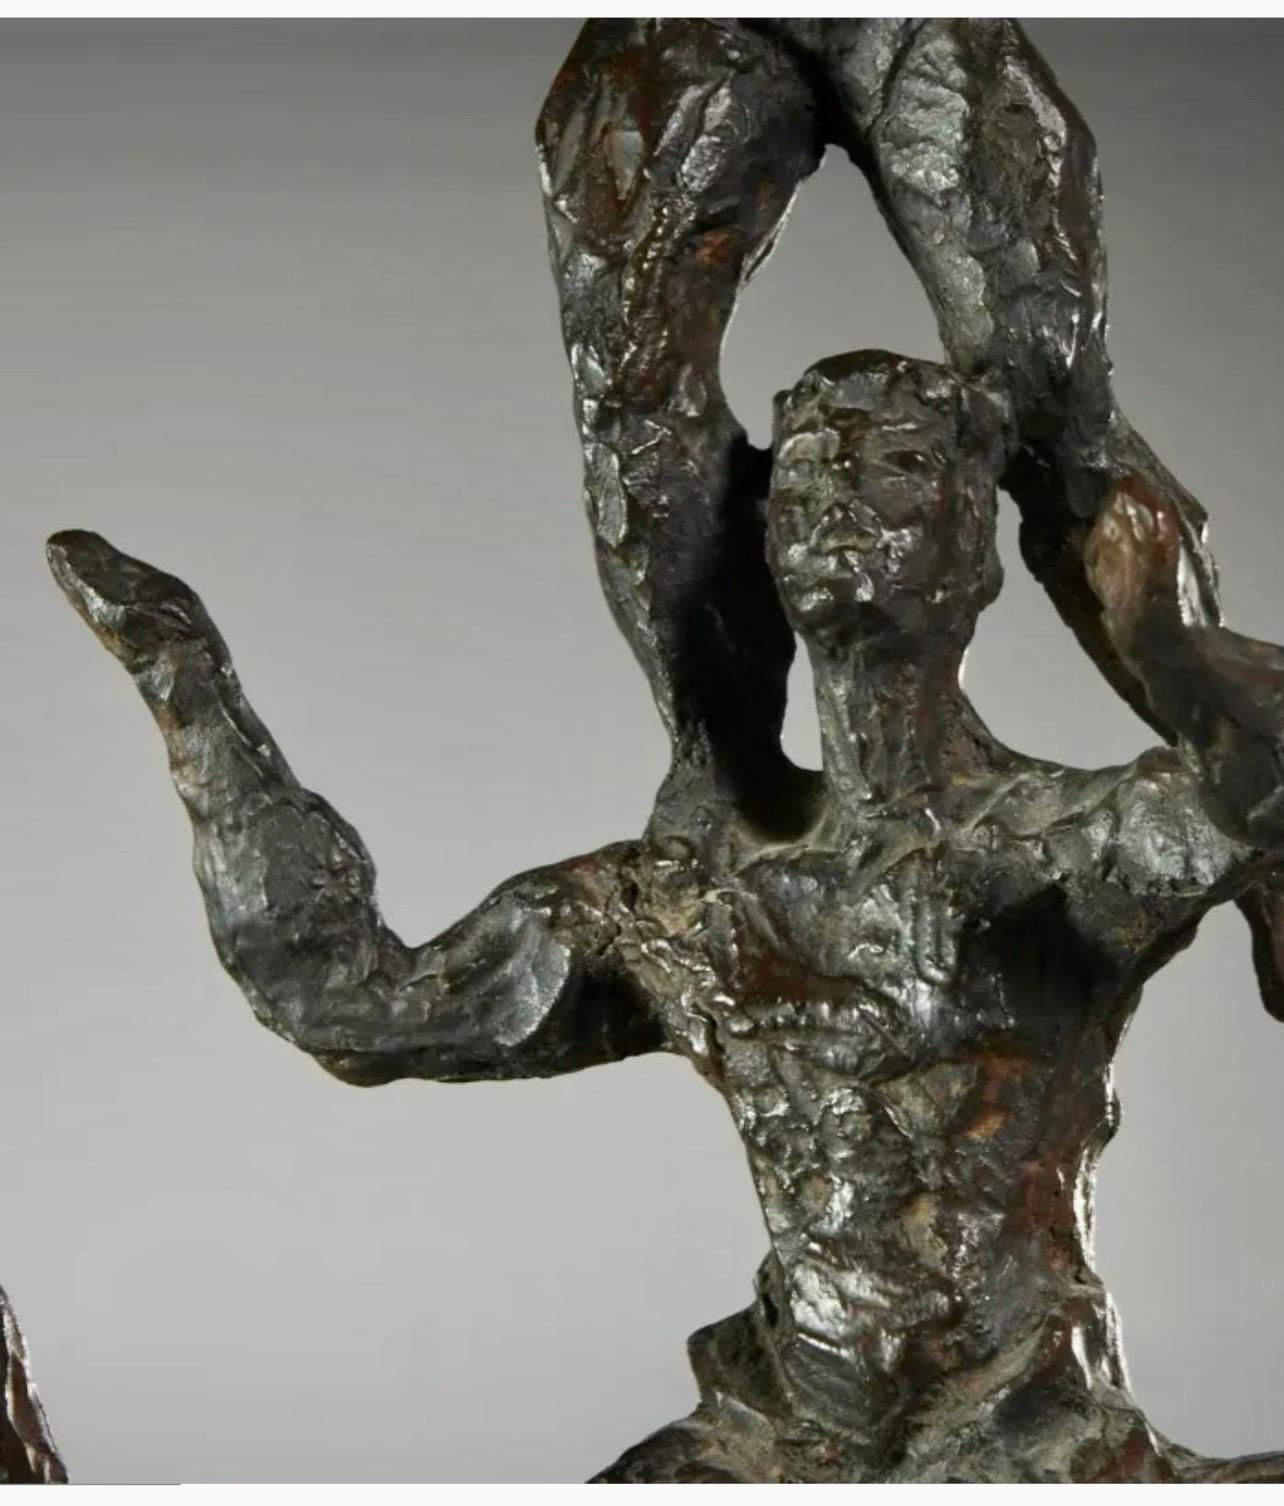 Chaim Gross (Américain, 1904-1991) 
Sculpture en bronze patiné, 
Trois acrobates, 
signé 
monté sur socle en marbre noir
24.5 